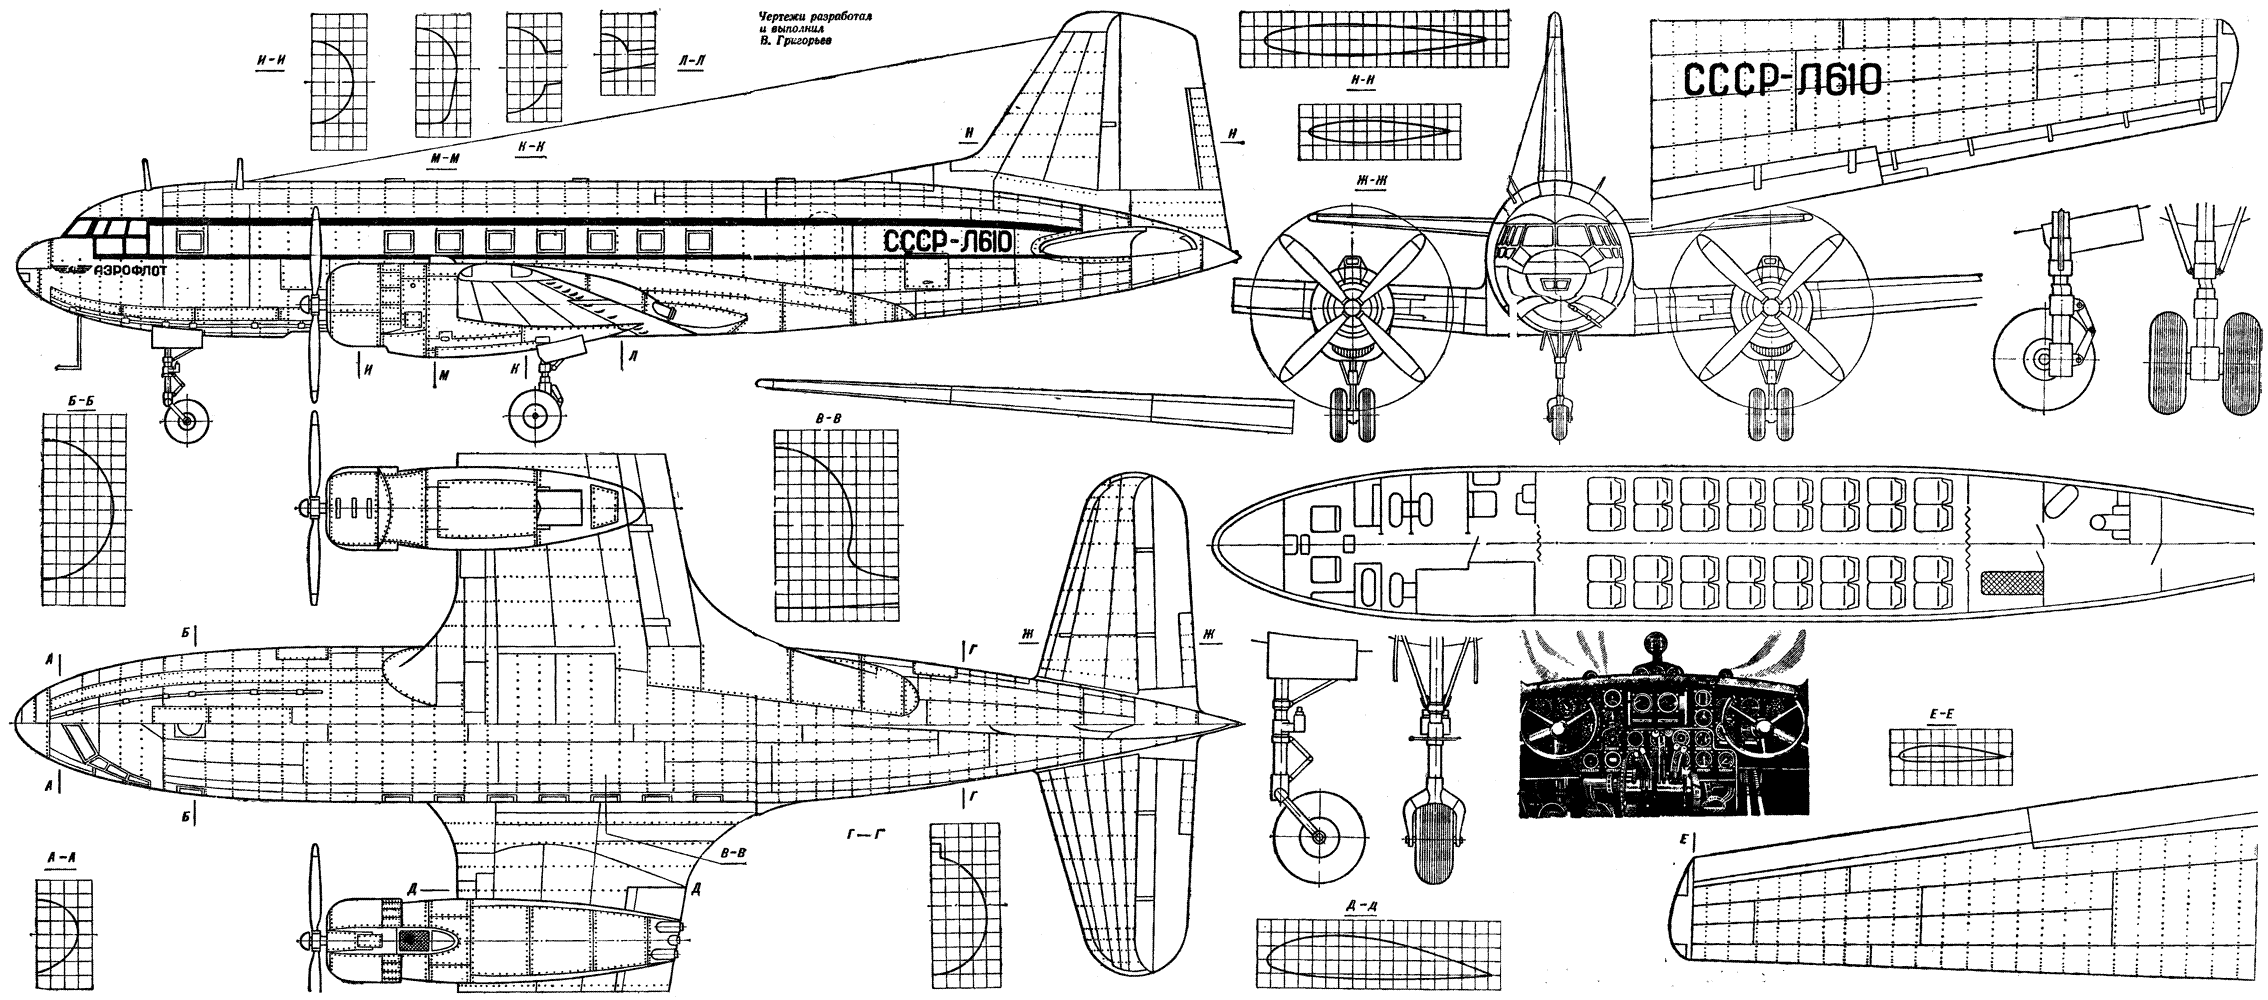 Военно-транспортный самолет ан-12